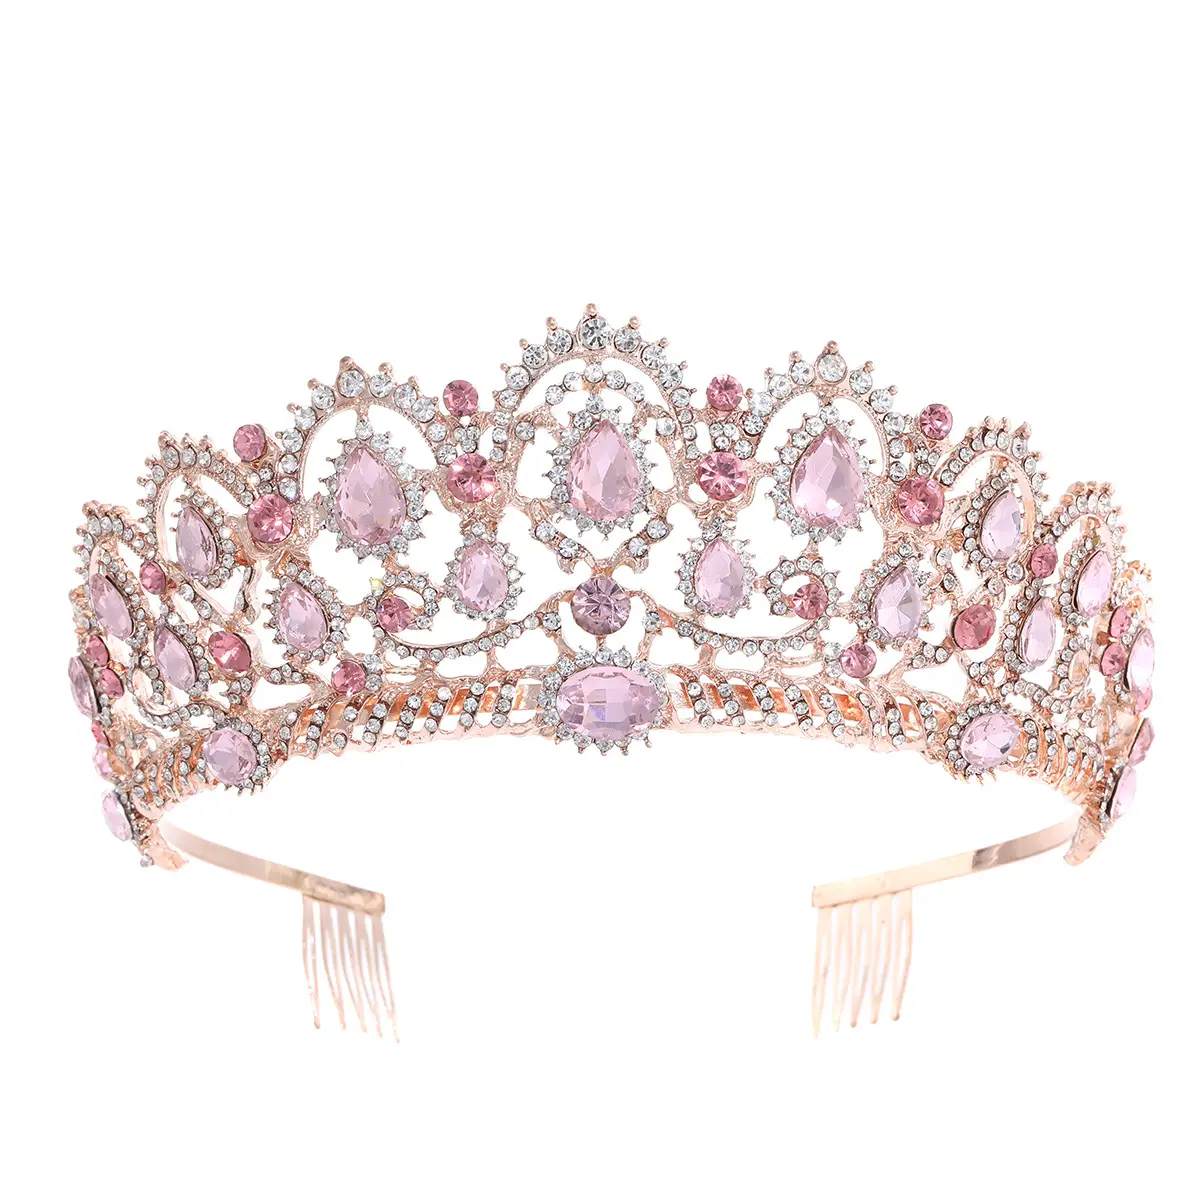 Vendita calda di Colore Rosa Tiara di Diamanti Da Sposa Accessori Per Capelli Di Cristallo Corona Copricapo In Oro Rosa Da Sposa Corone